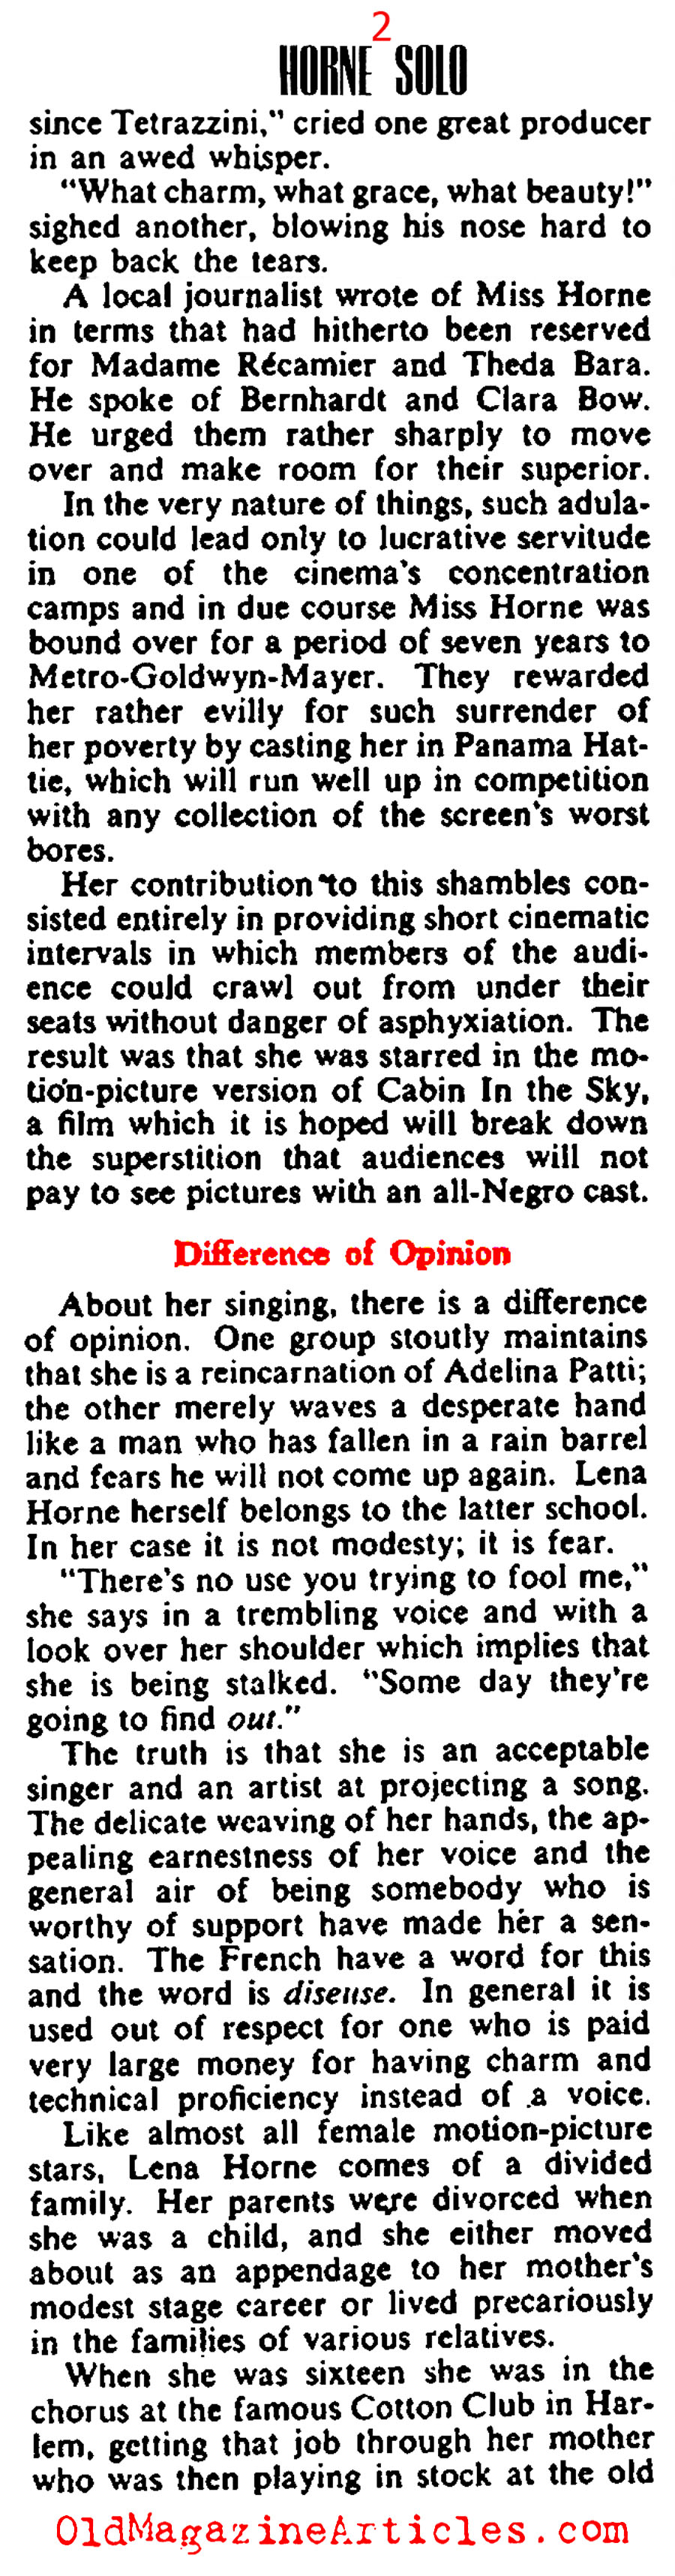 Lena Horne (Collier's Magazine, 1943)